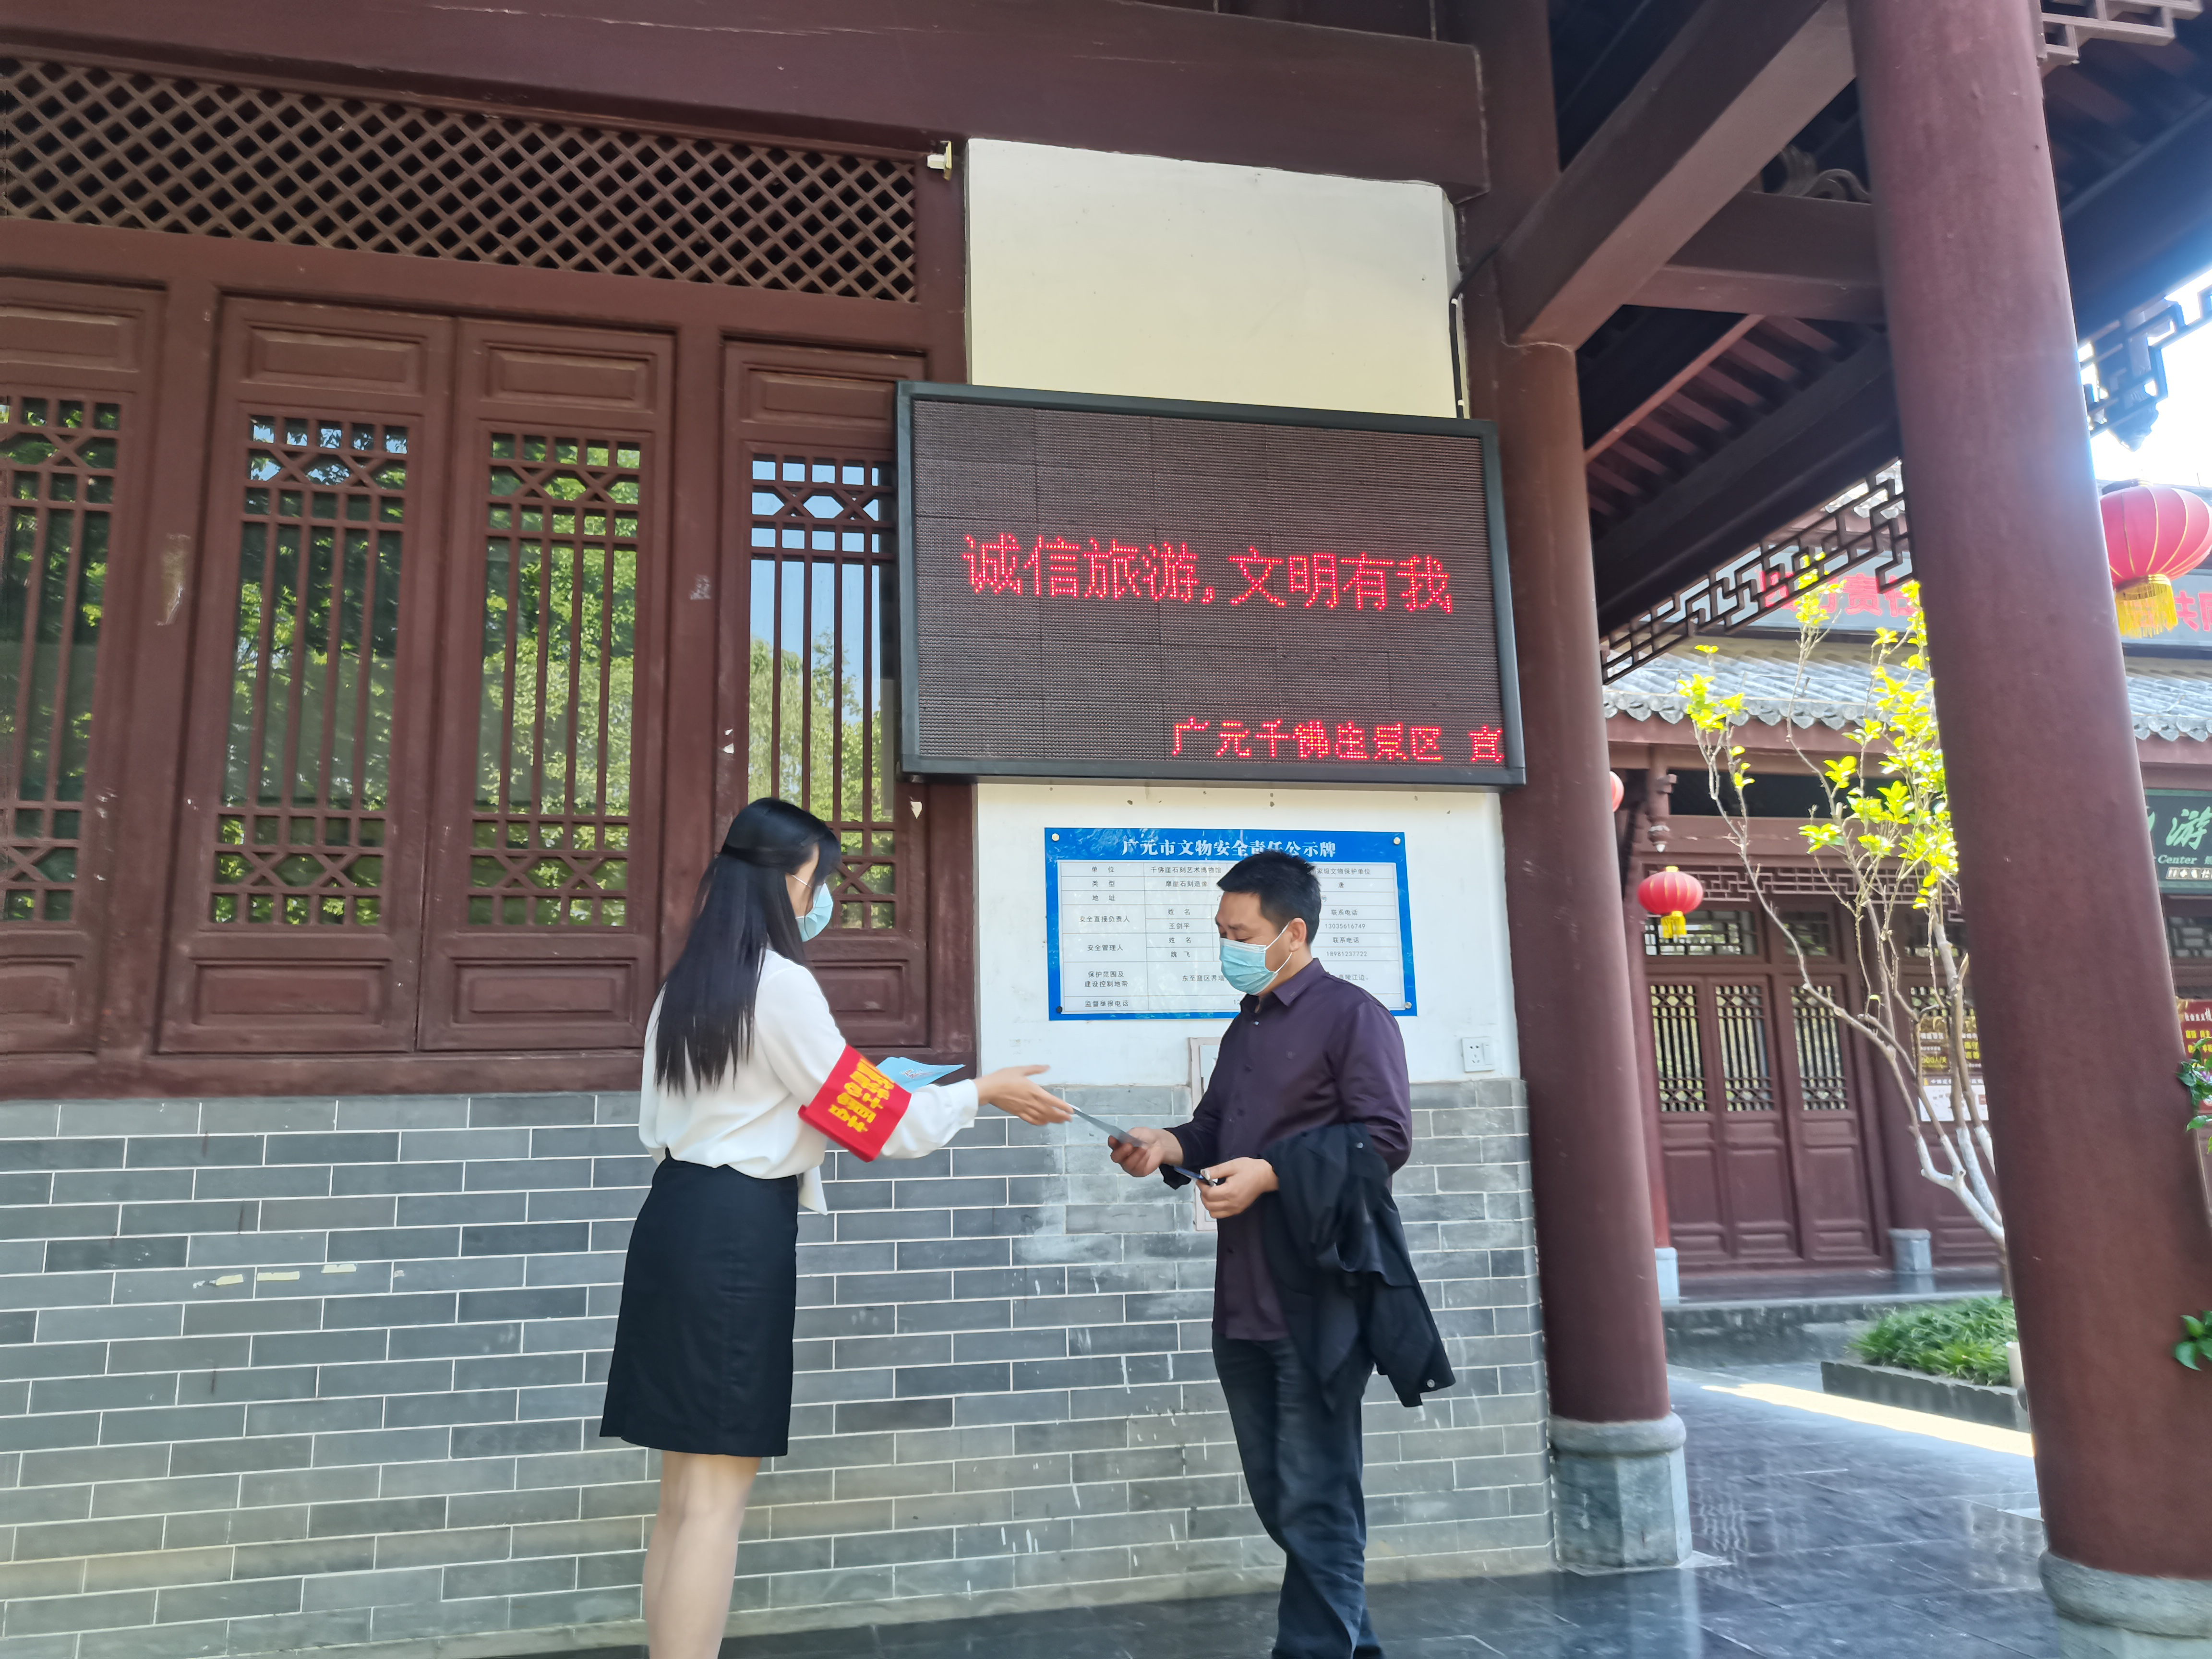 广元市文化广电旅游局积极开展 “诚信旅游 文明有我”宣传活动